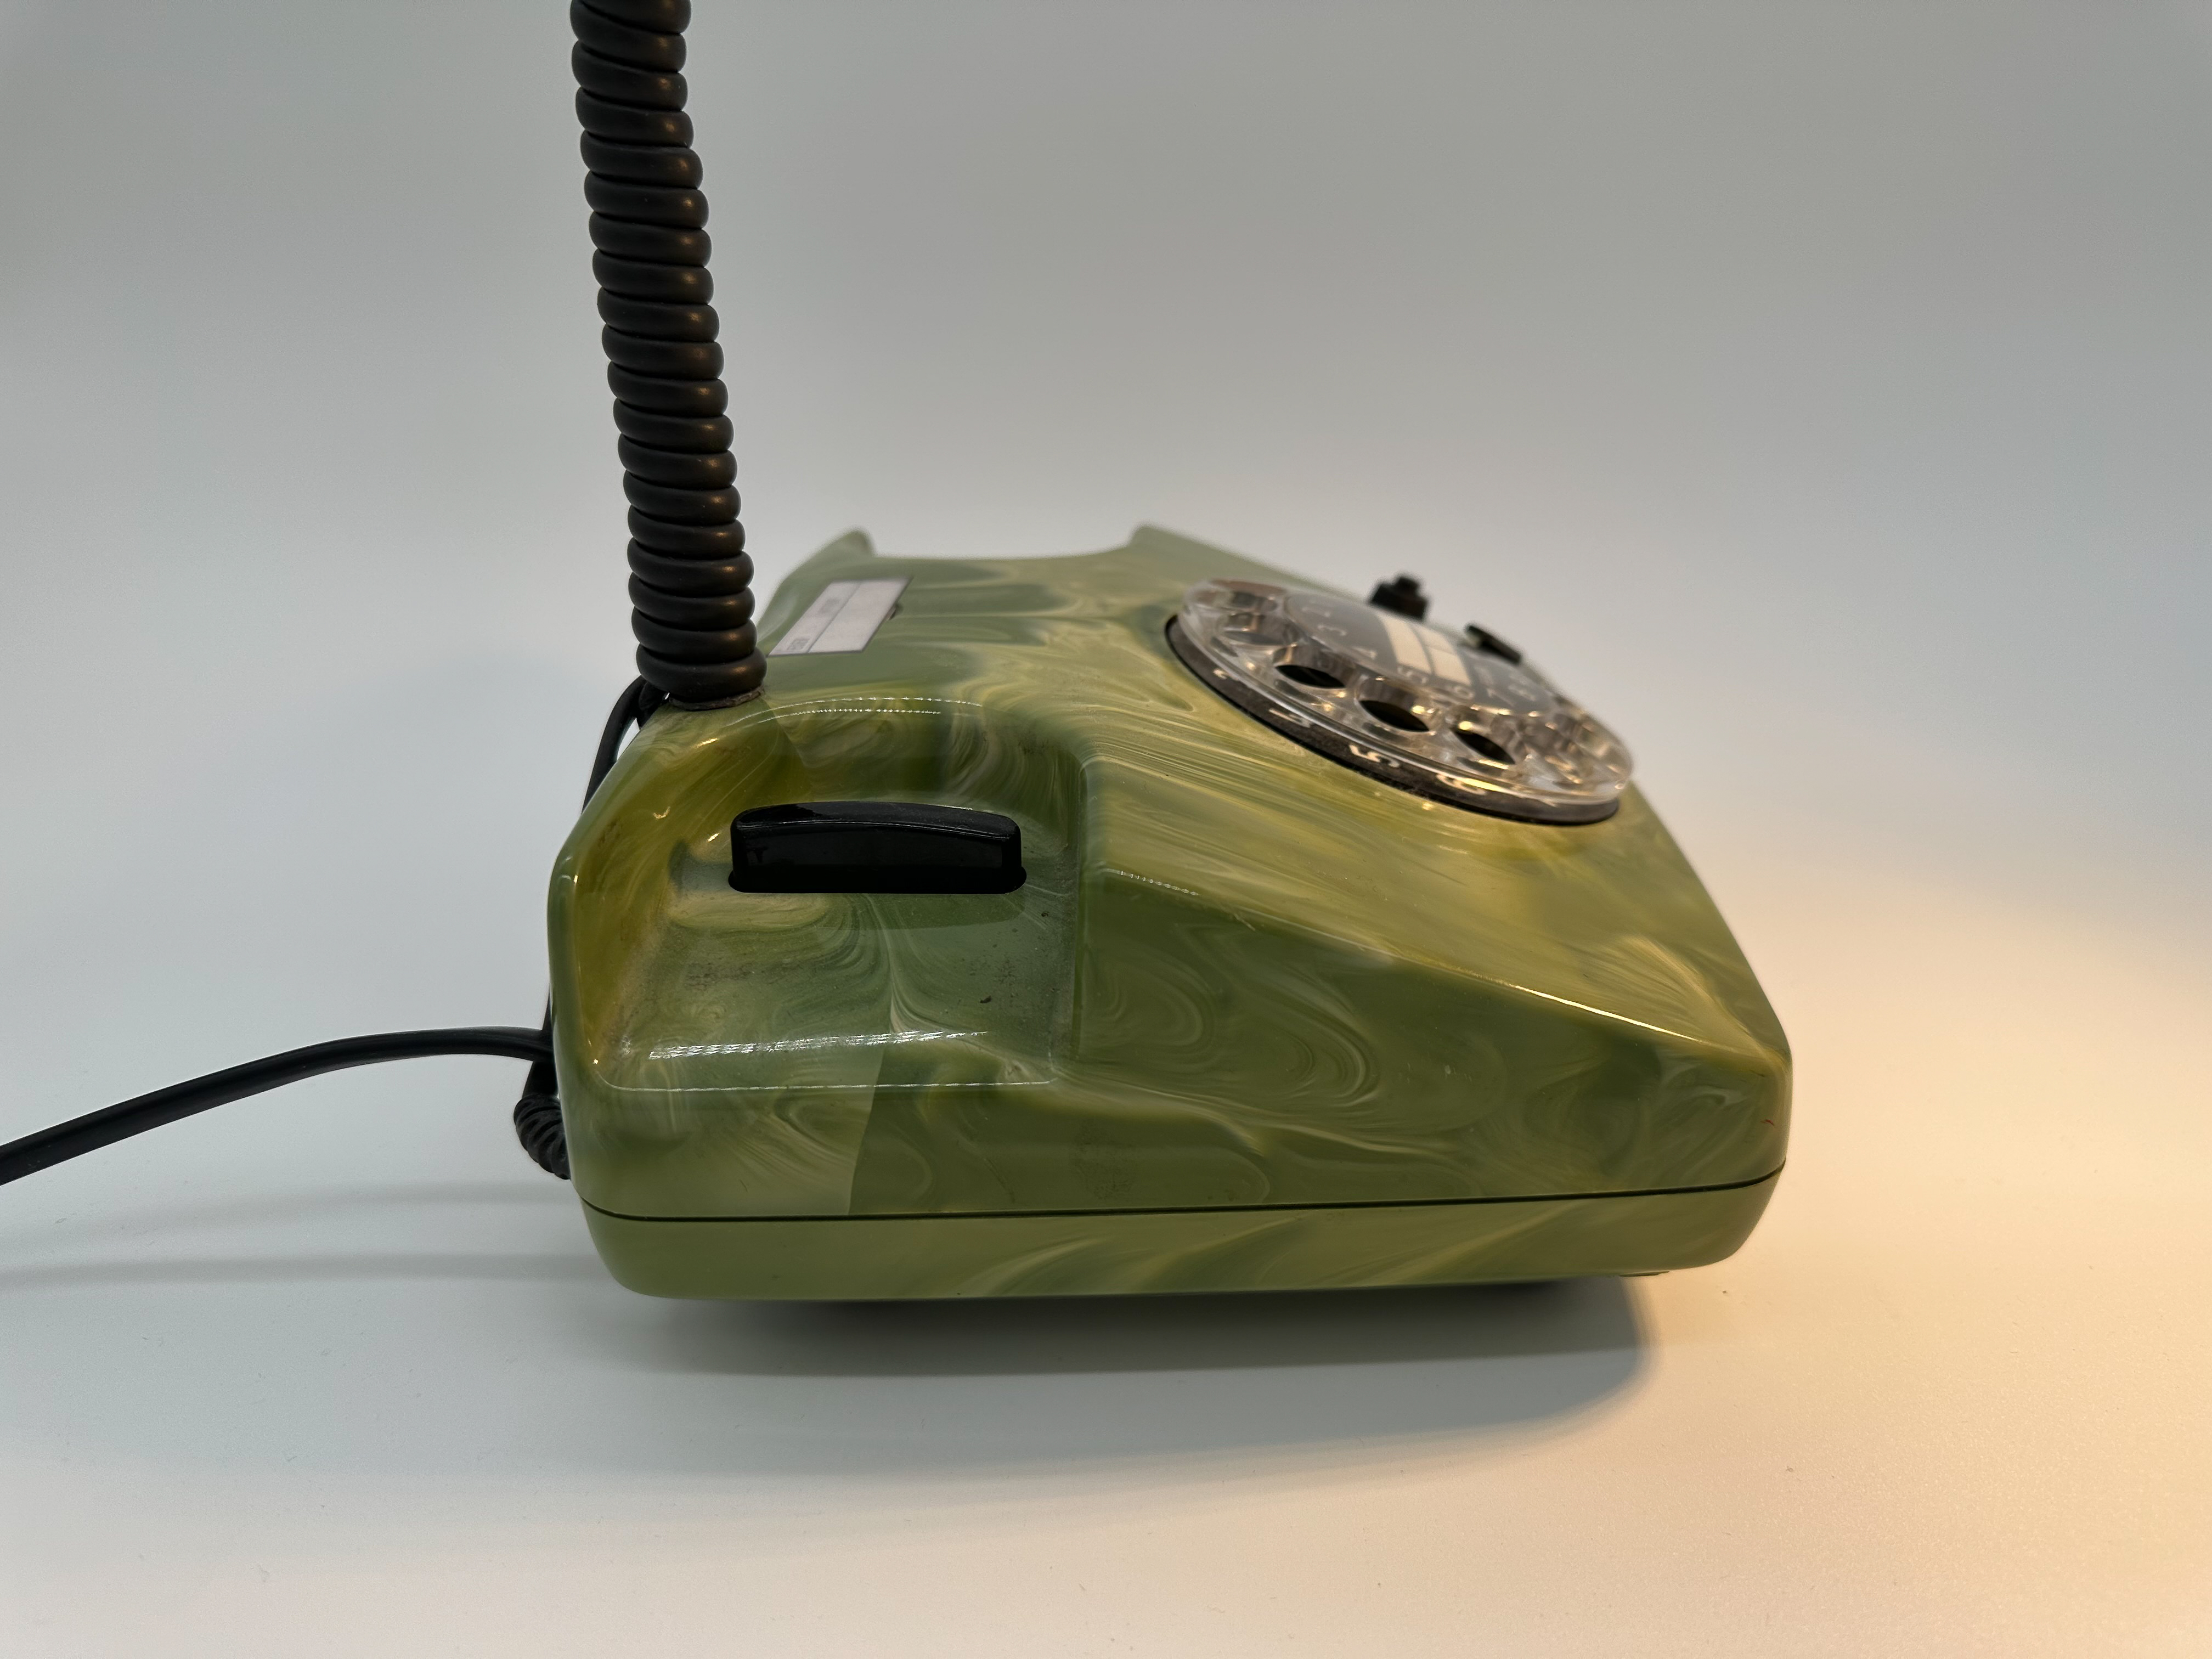 Besondere grüne Vintage Telefonlampe